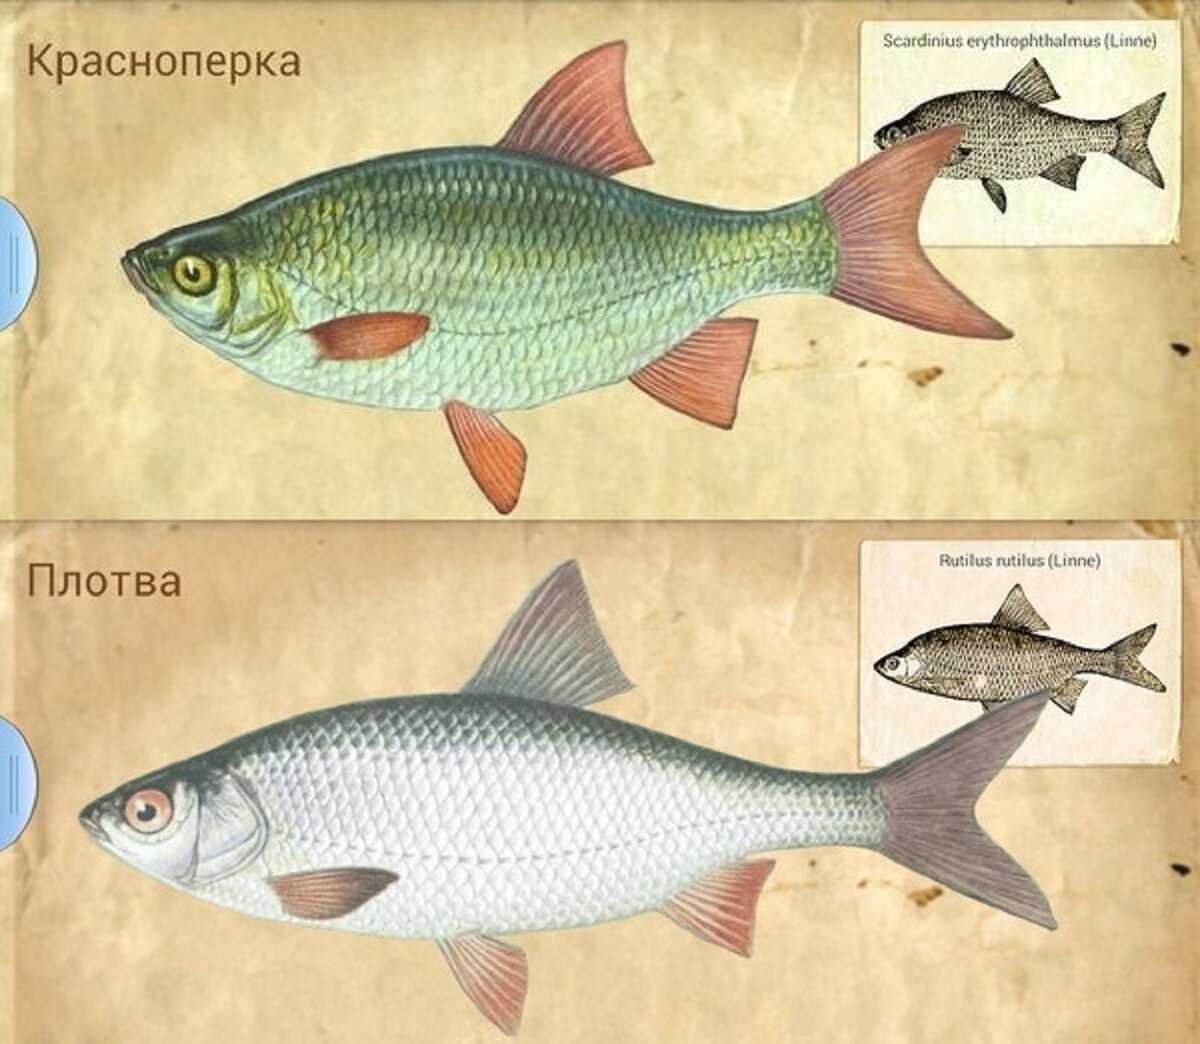 Как отличить рыбу